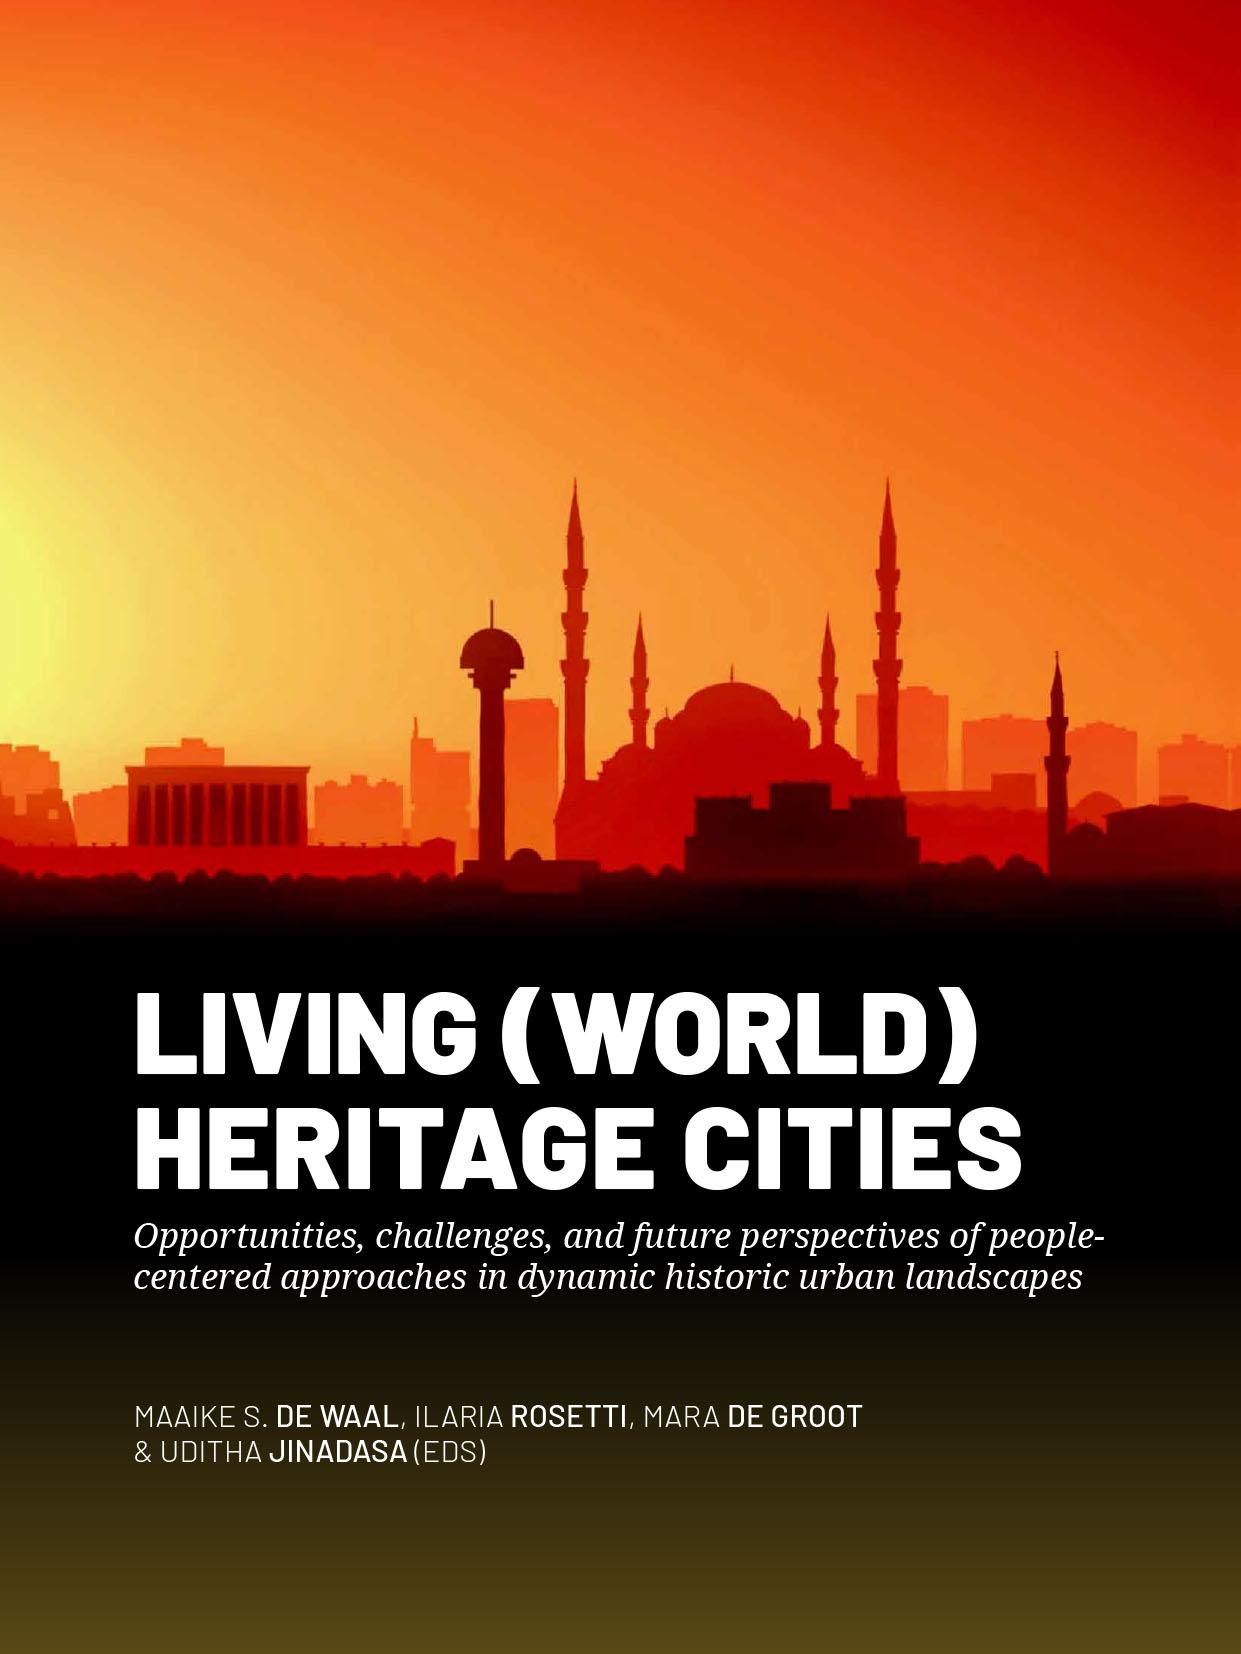 boek global heritage